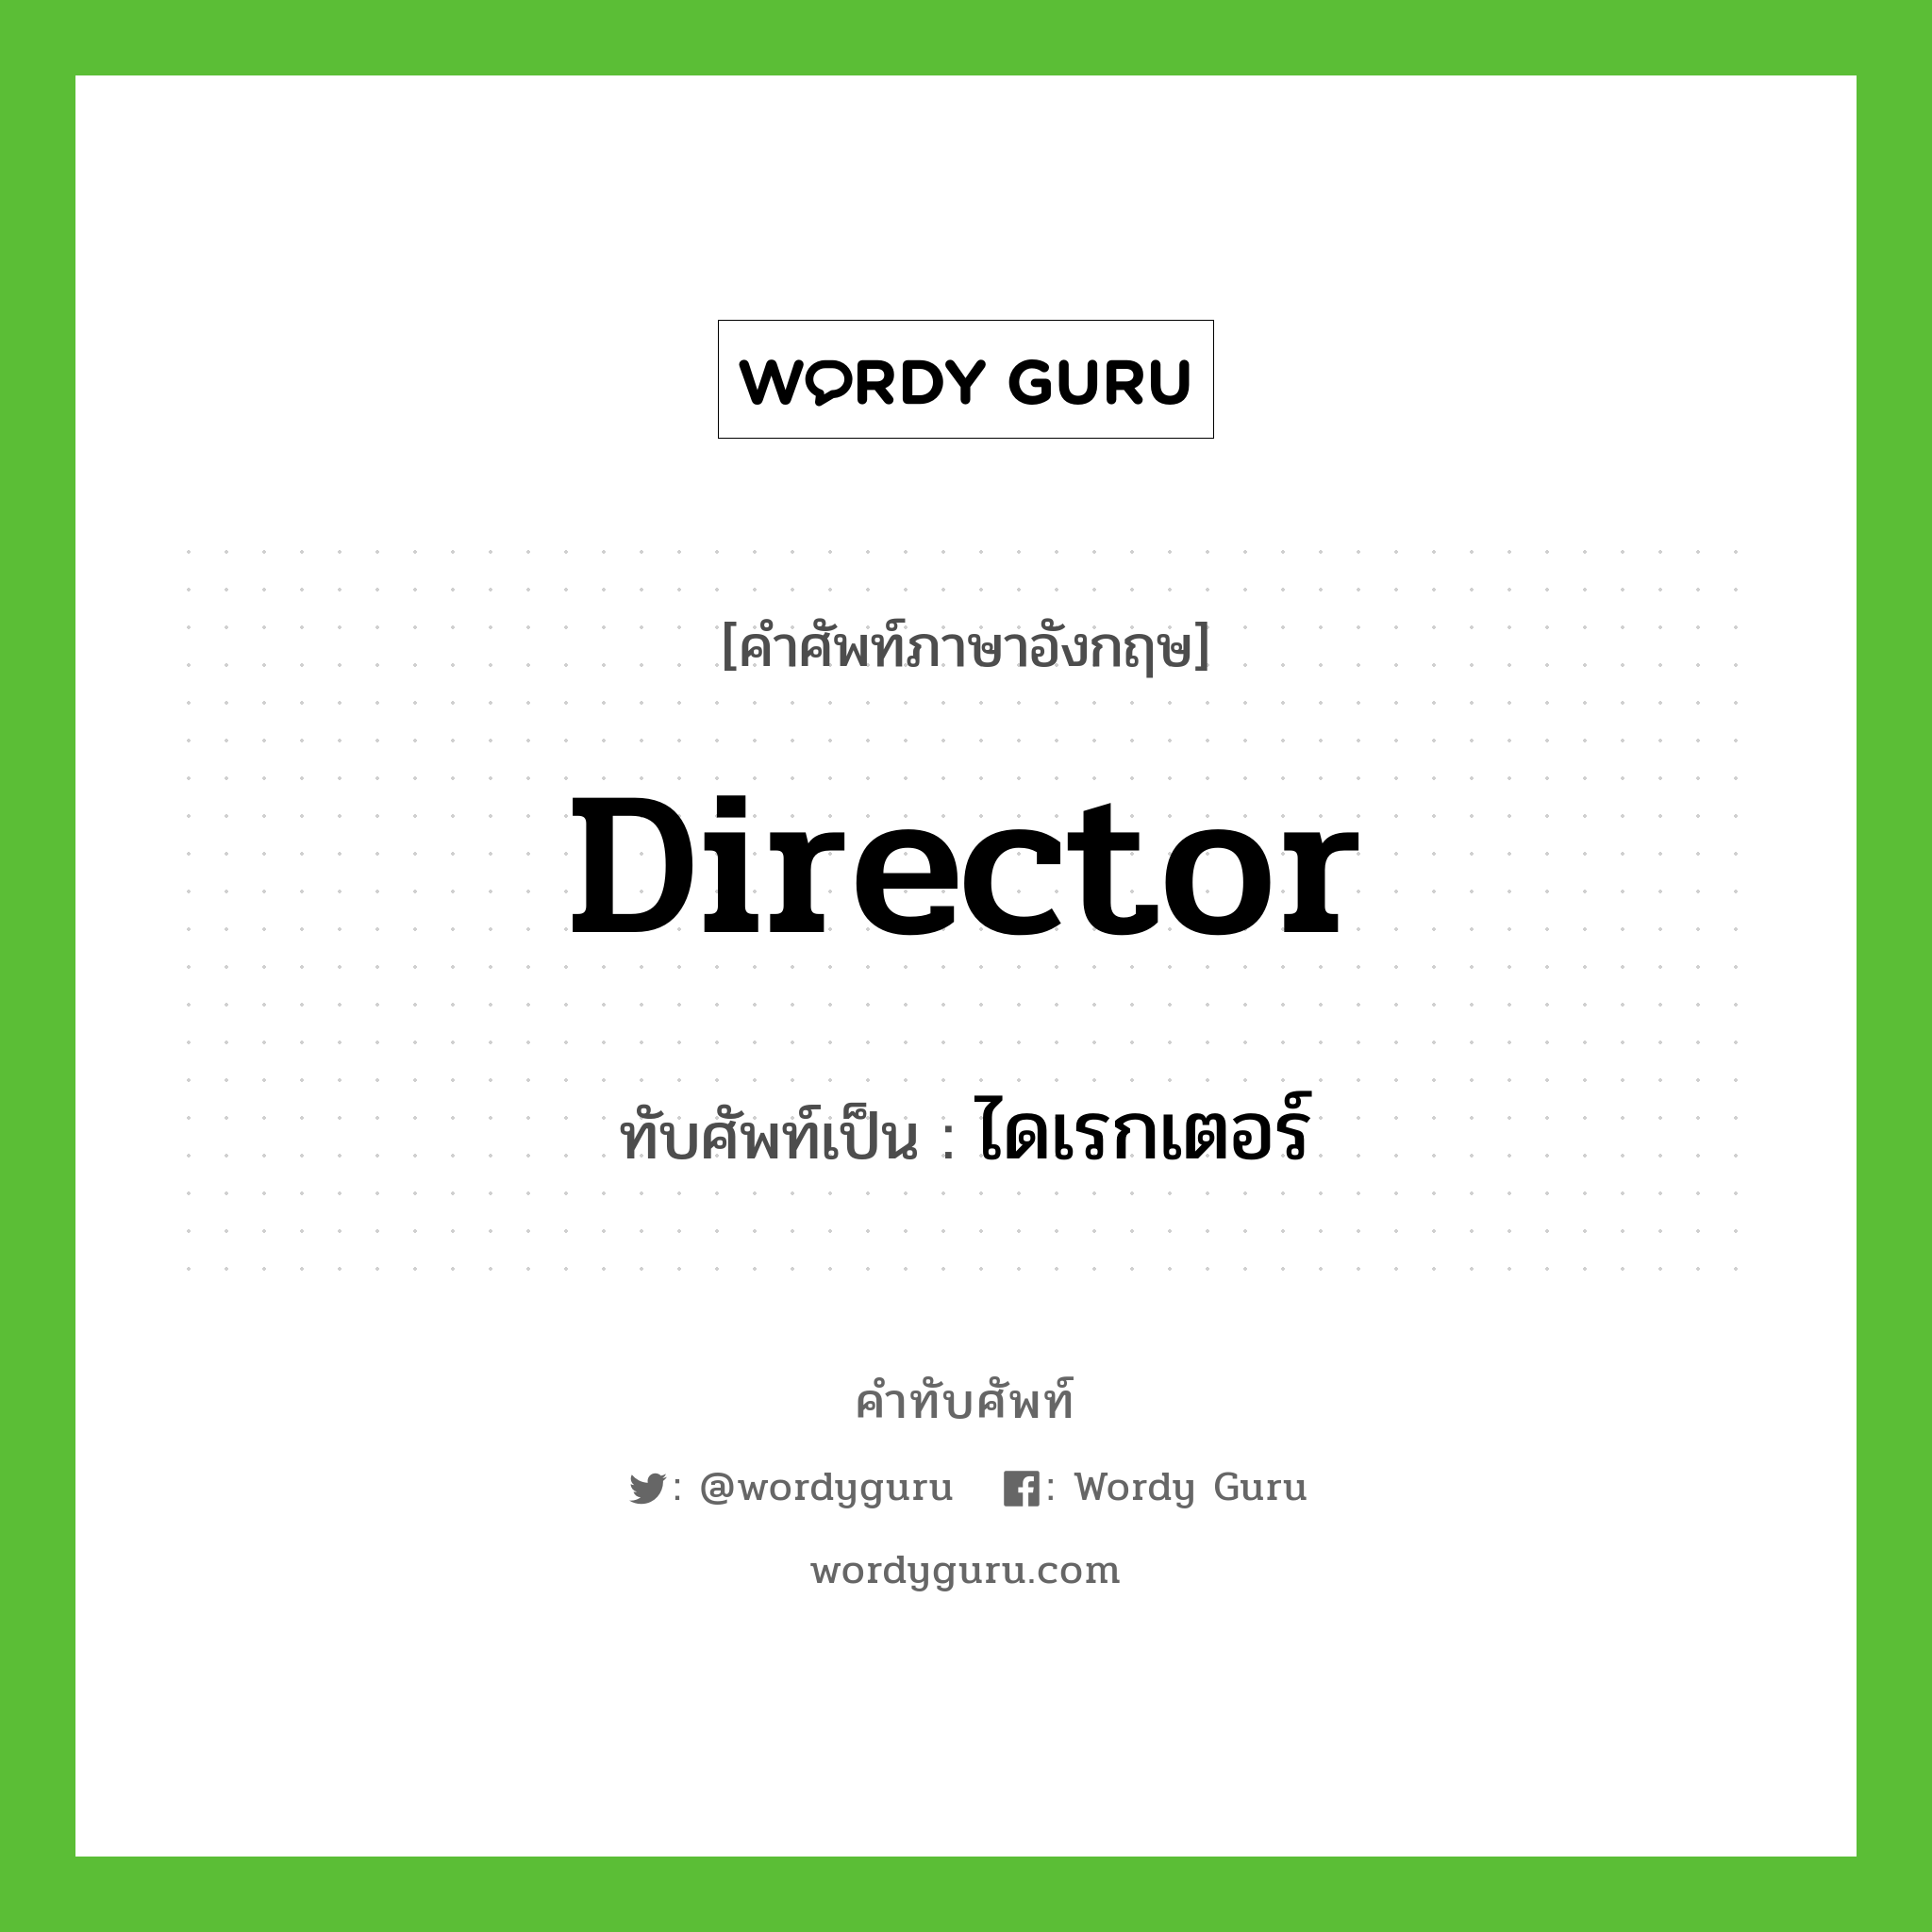 director เขียนเป็นคำไทยว่าอะไร?, คำศัพท์ภาษาอังกฤษ director ทับศัพท์เป็น ไดเรกเตอร์